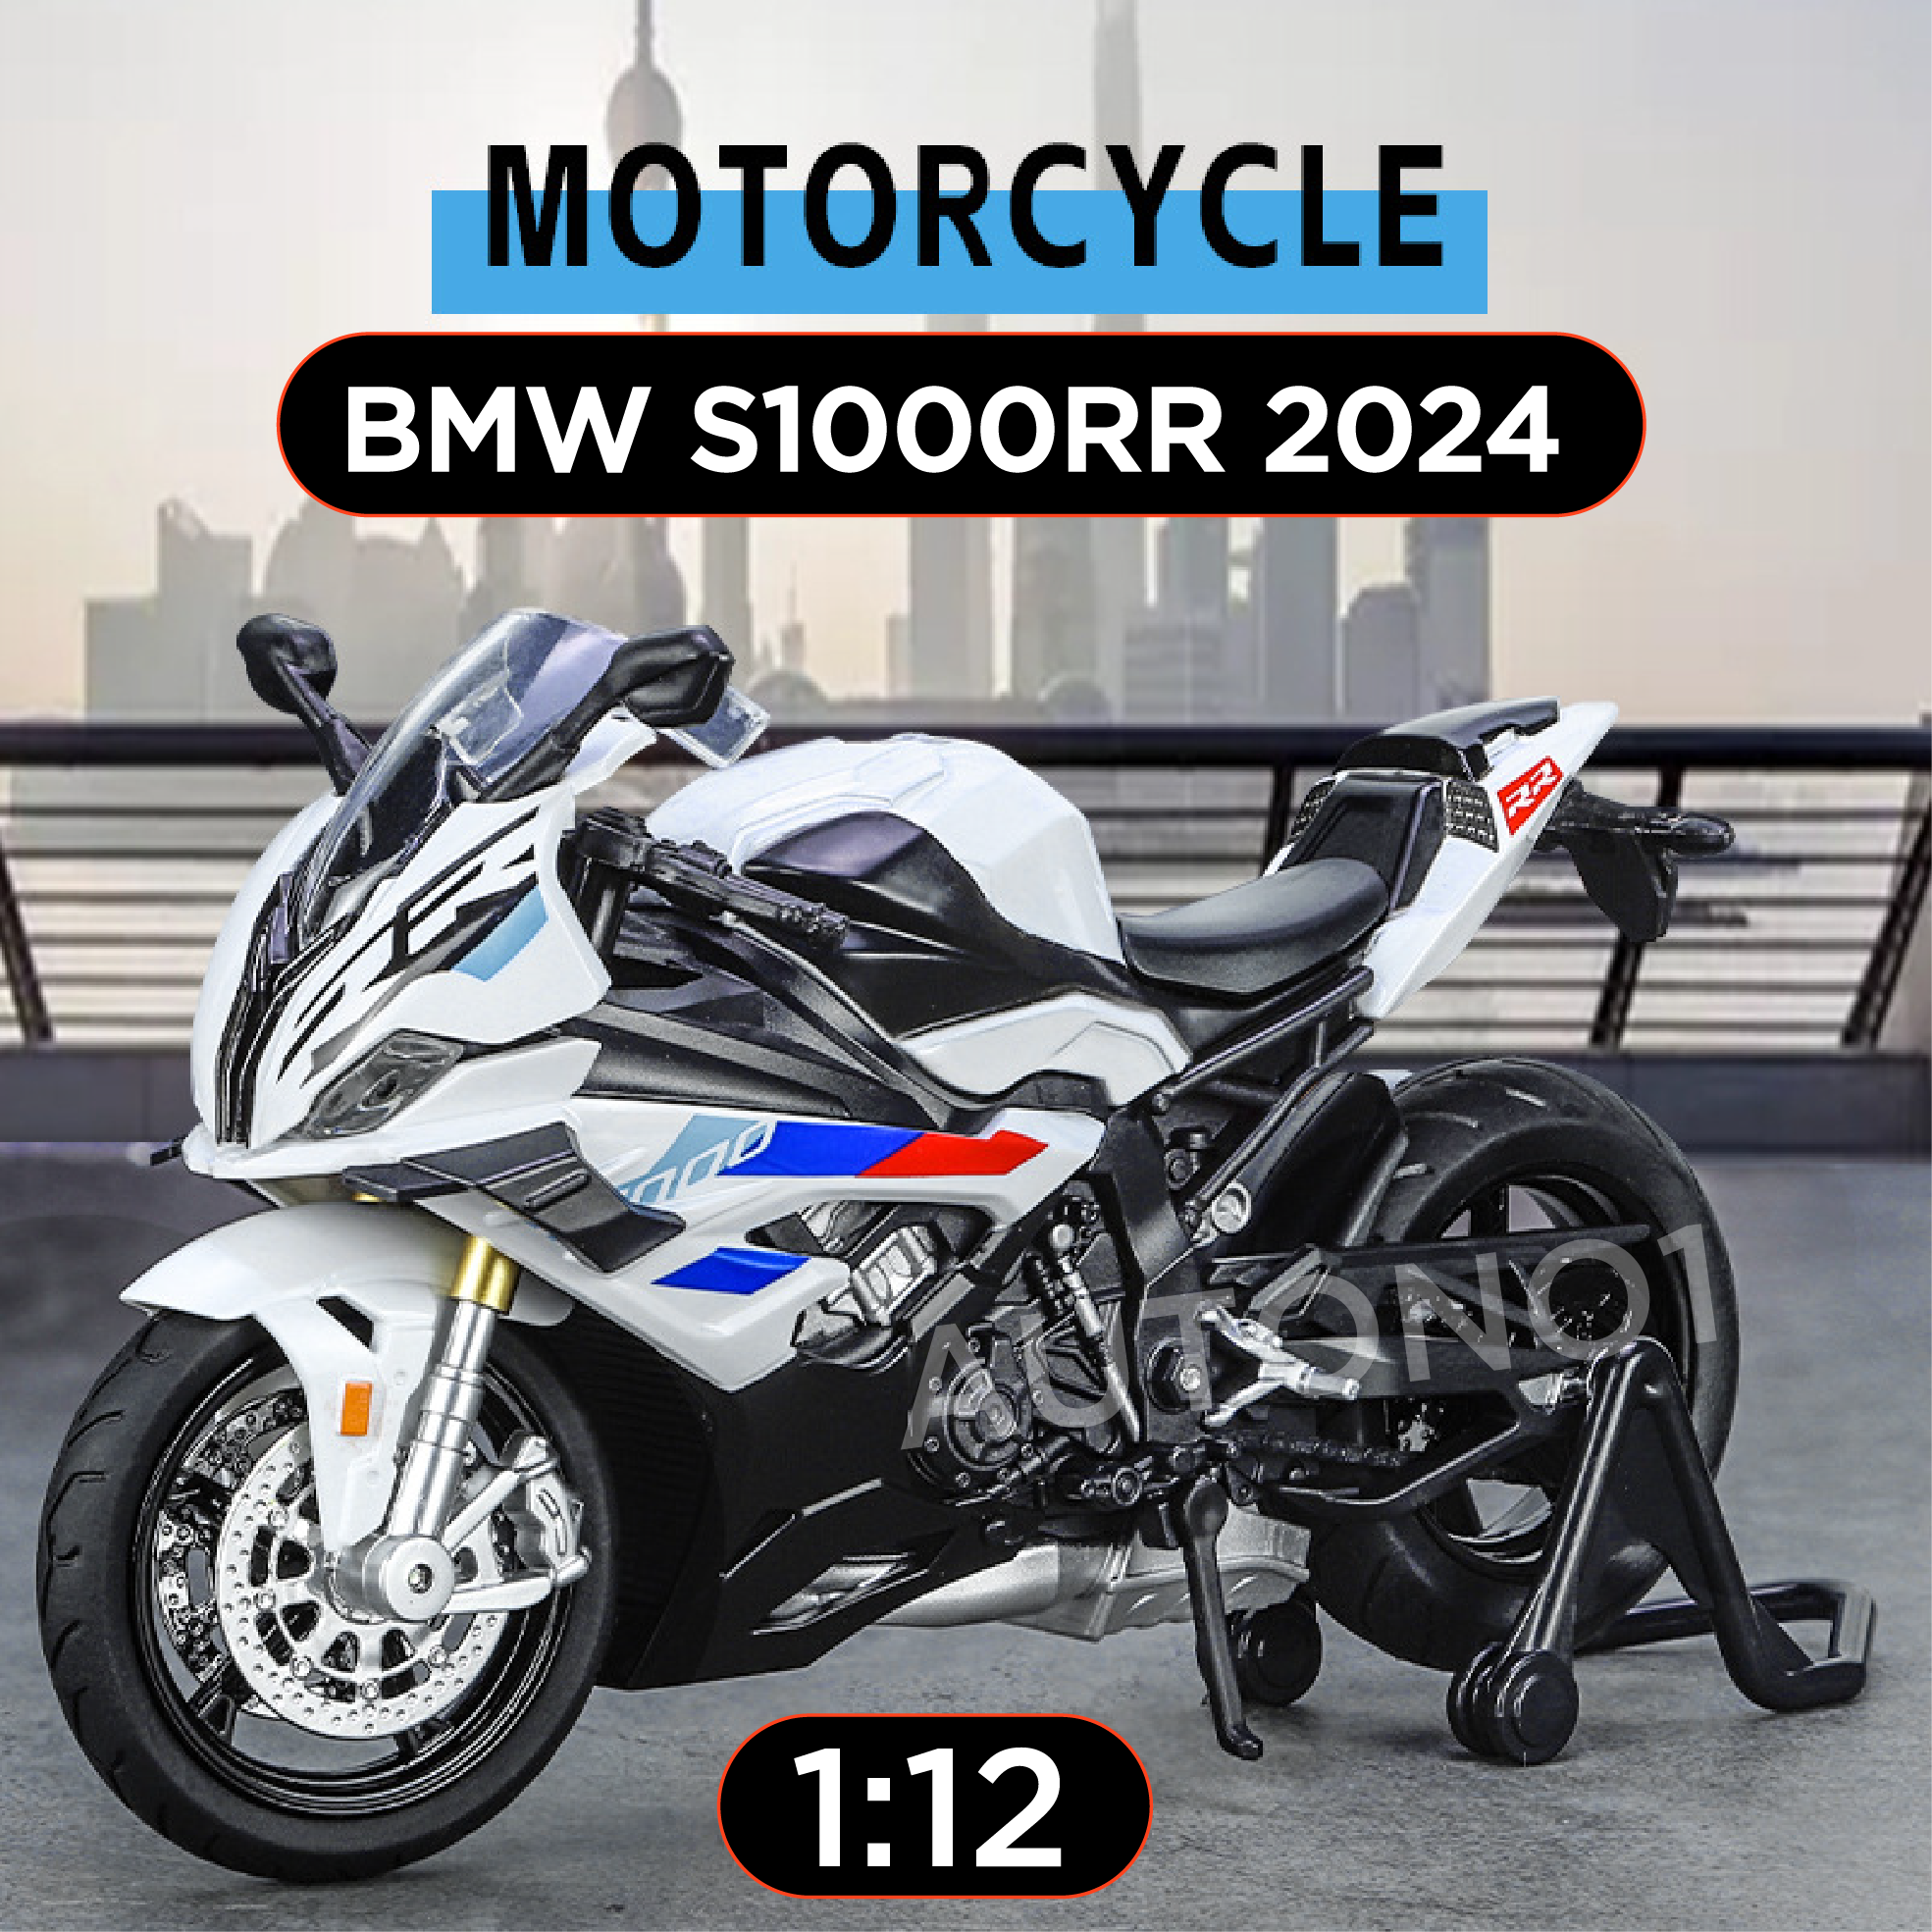  Mô hình xe BMW S1000RR 2024 có cánh gió tỉ lệ 1:12 Huayi Alloy MT070 